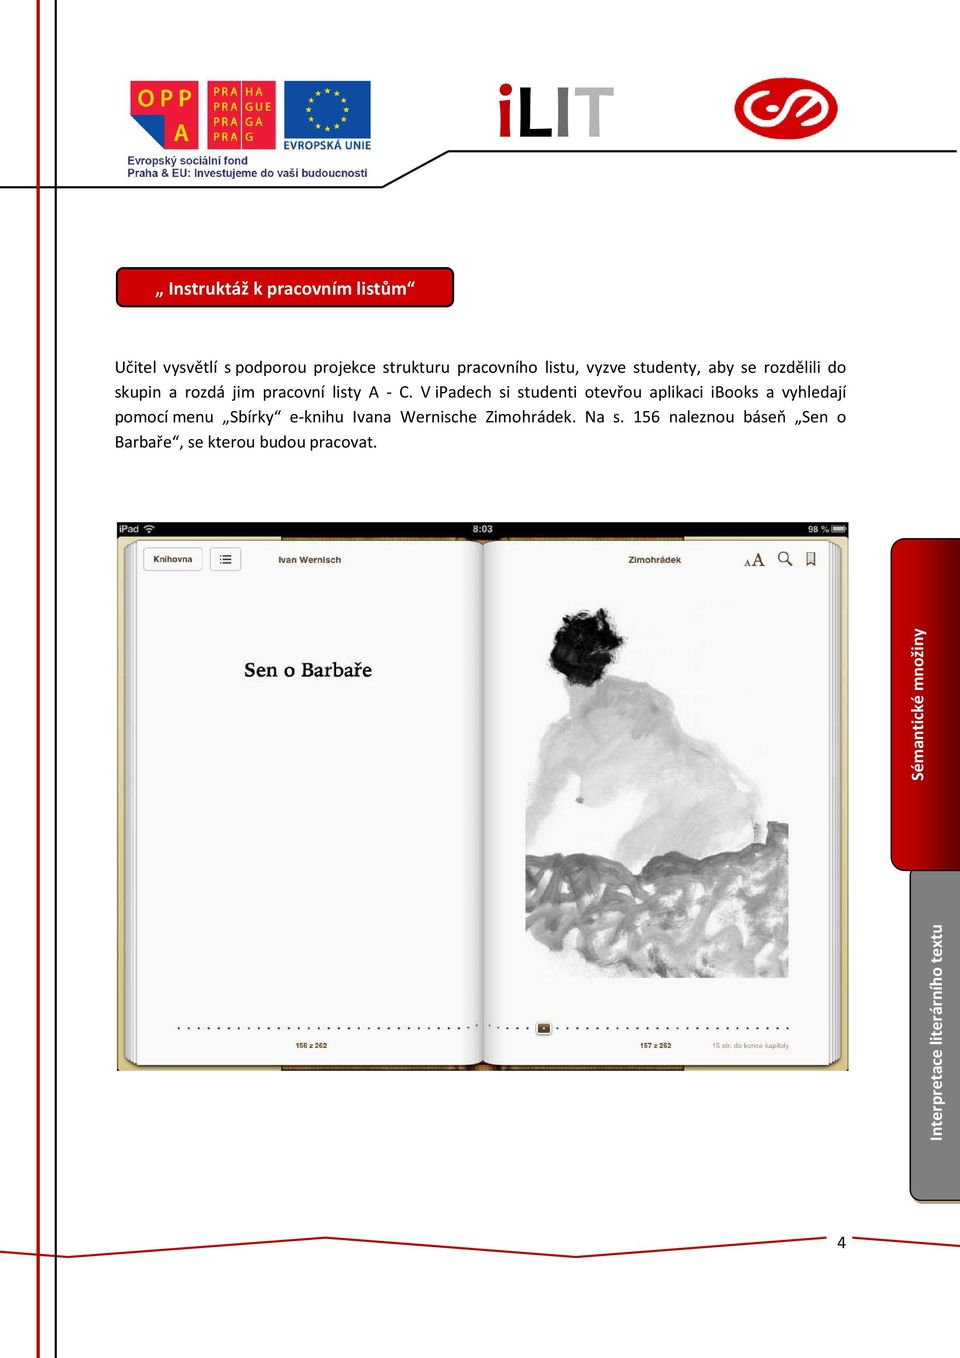 V ipadech si studenti otevřou aplikaci ibooks a vyhledají pomocí menu Sbírky e-knihu